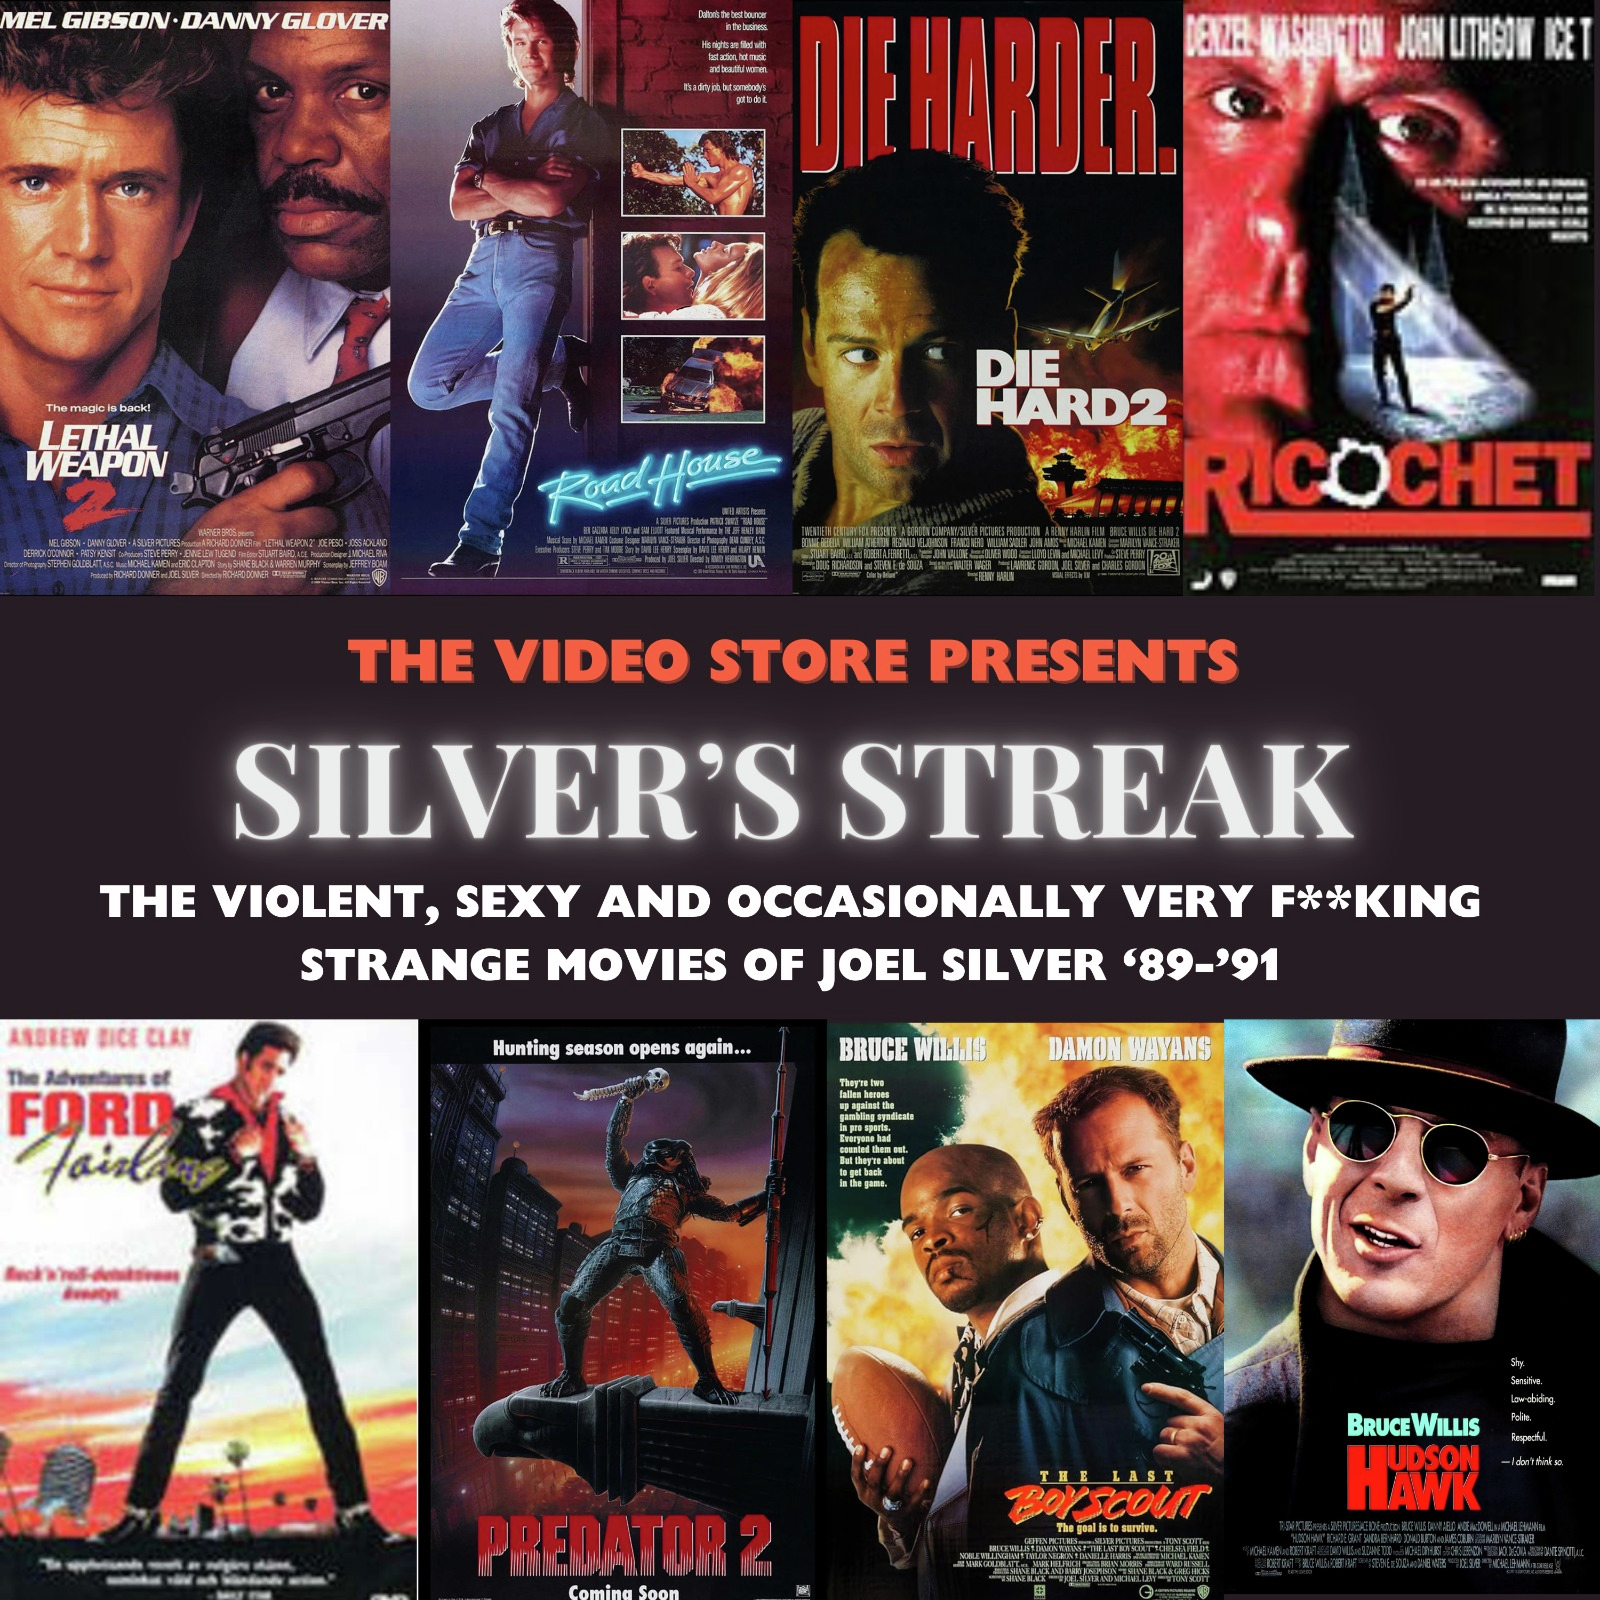 The Video Store Presents: Silver's Streak Vol. 3 - Predator 2 & Ricochet